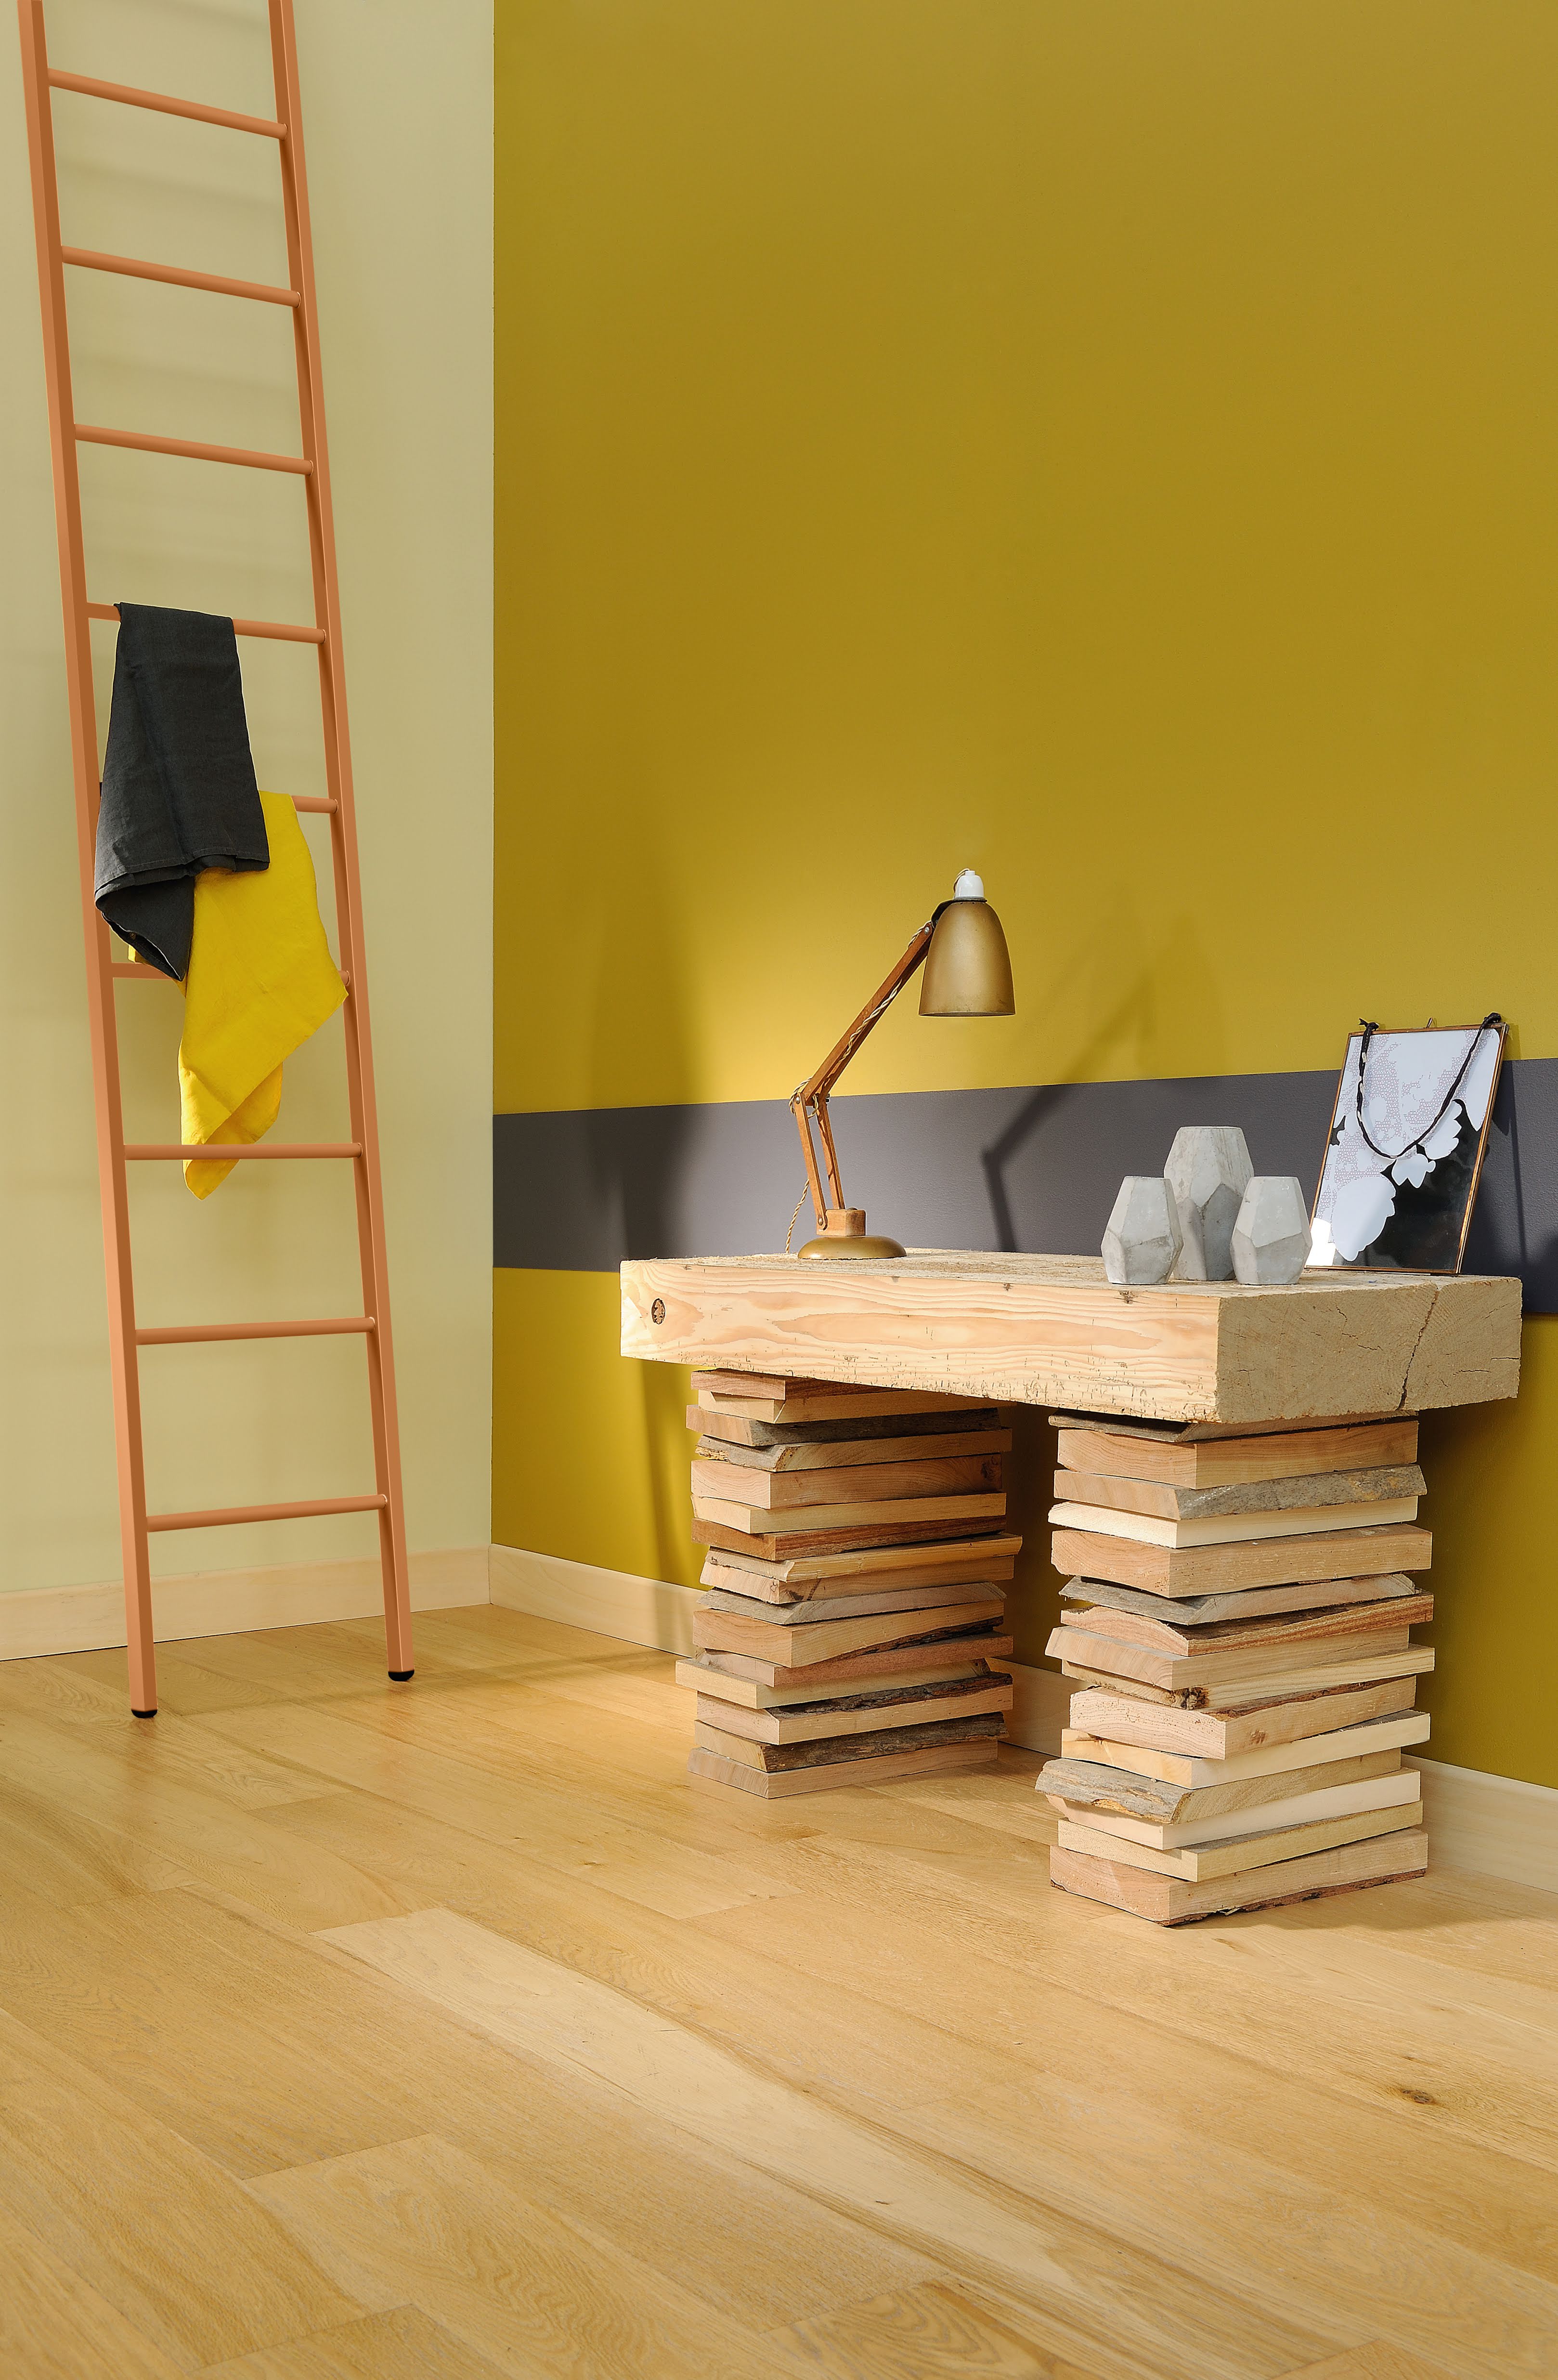 Bureau ou bibliothèque réalisé(e) avec de la peinture intérieure dans les tons naturels, de gris et de jaunes